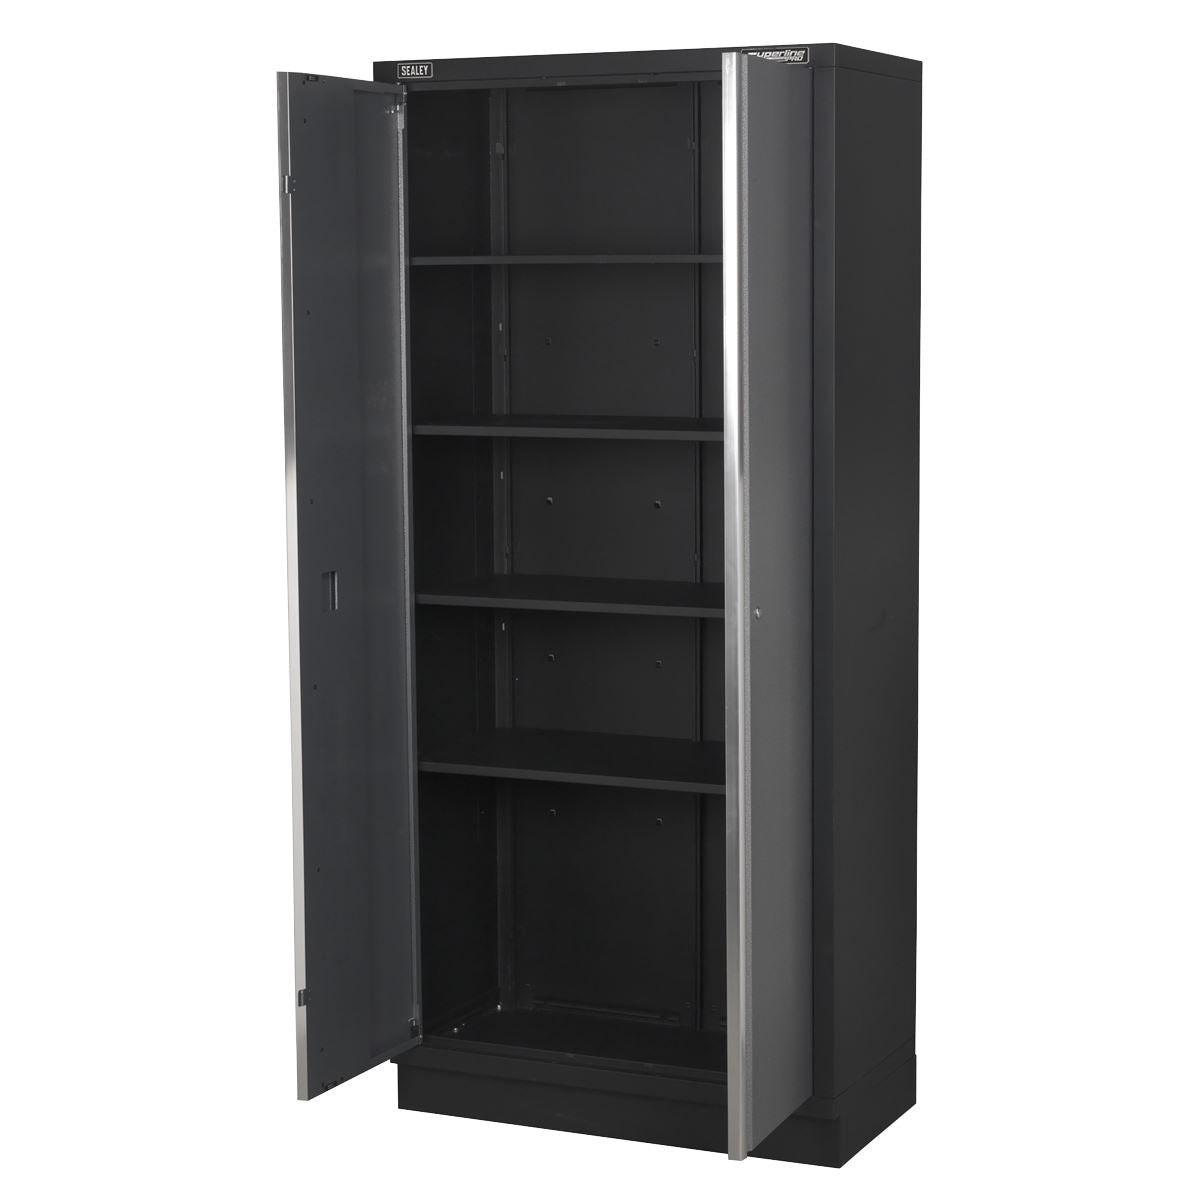 Sealey Superline Pro Modular Floor Cabinet 2 Door Full Height 915mm